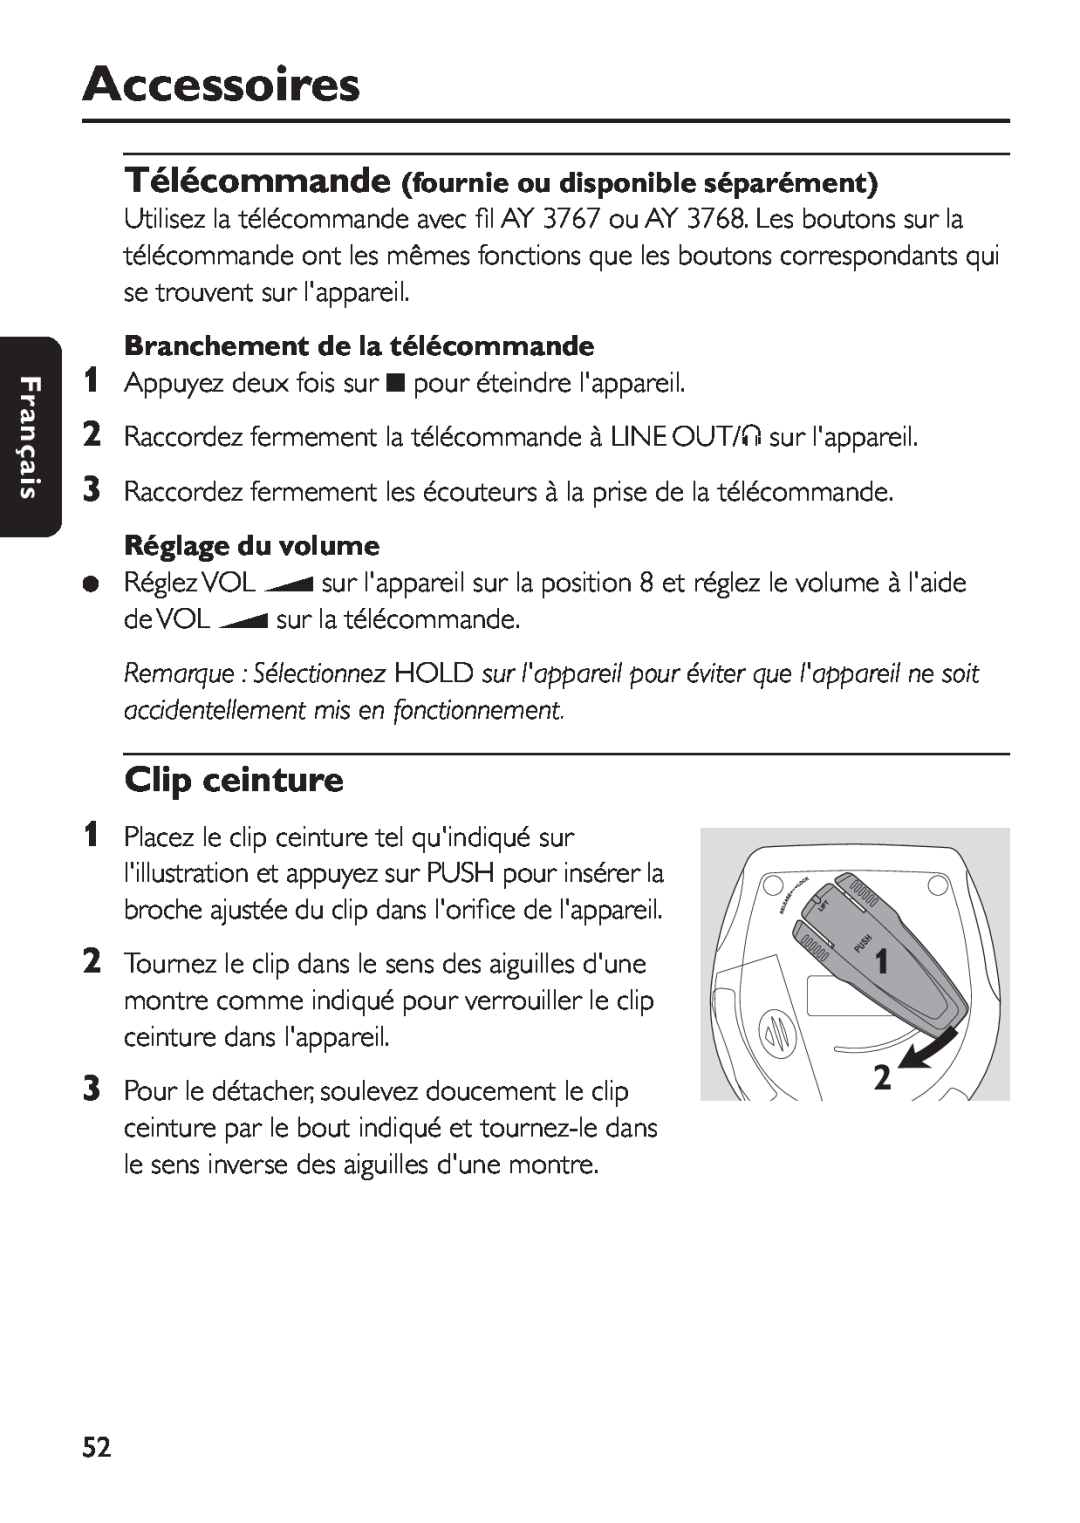 Philips EXP 501/00 Clip ceinture, Télécommande fournie ou disponible séparément, Branchement de la télécommande, Français 